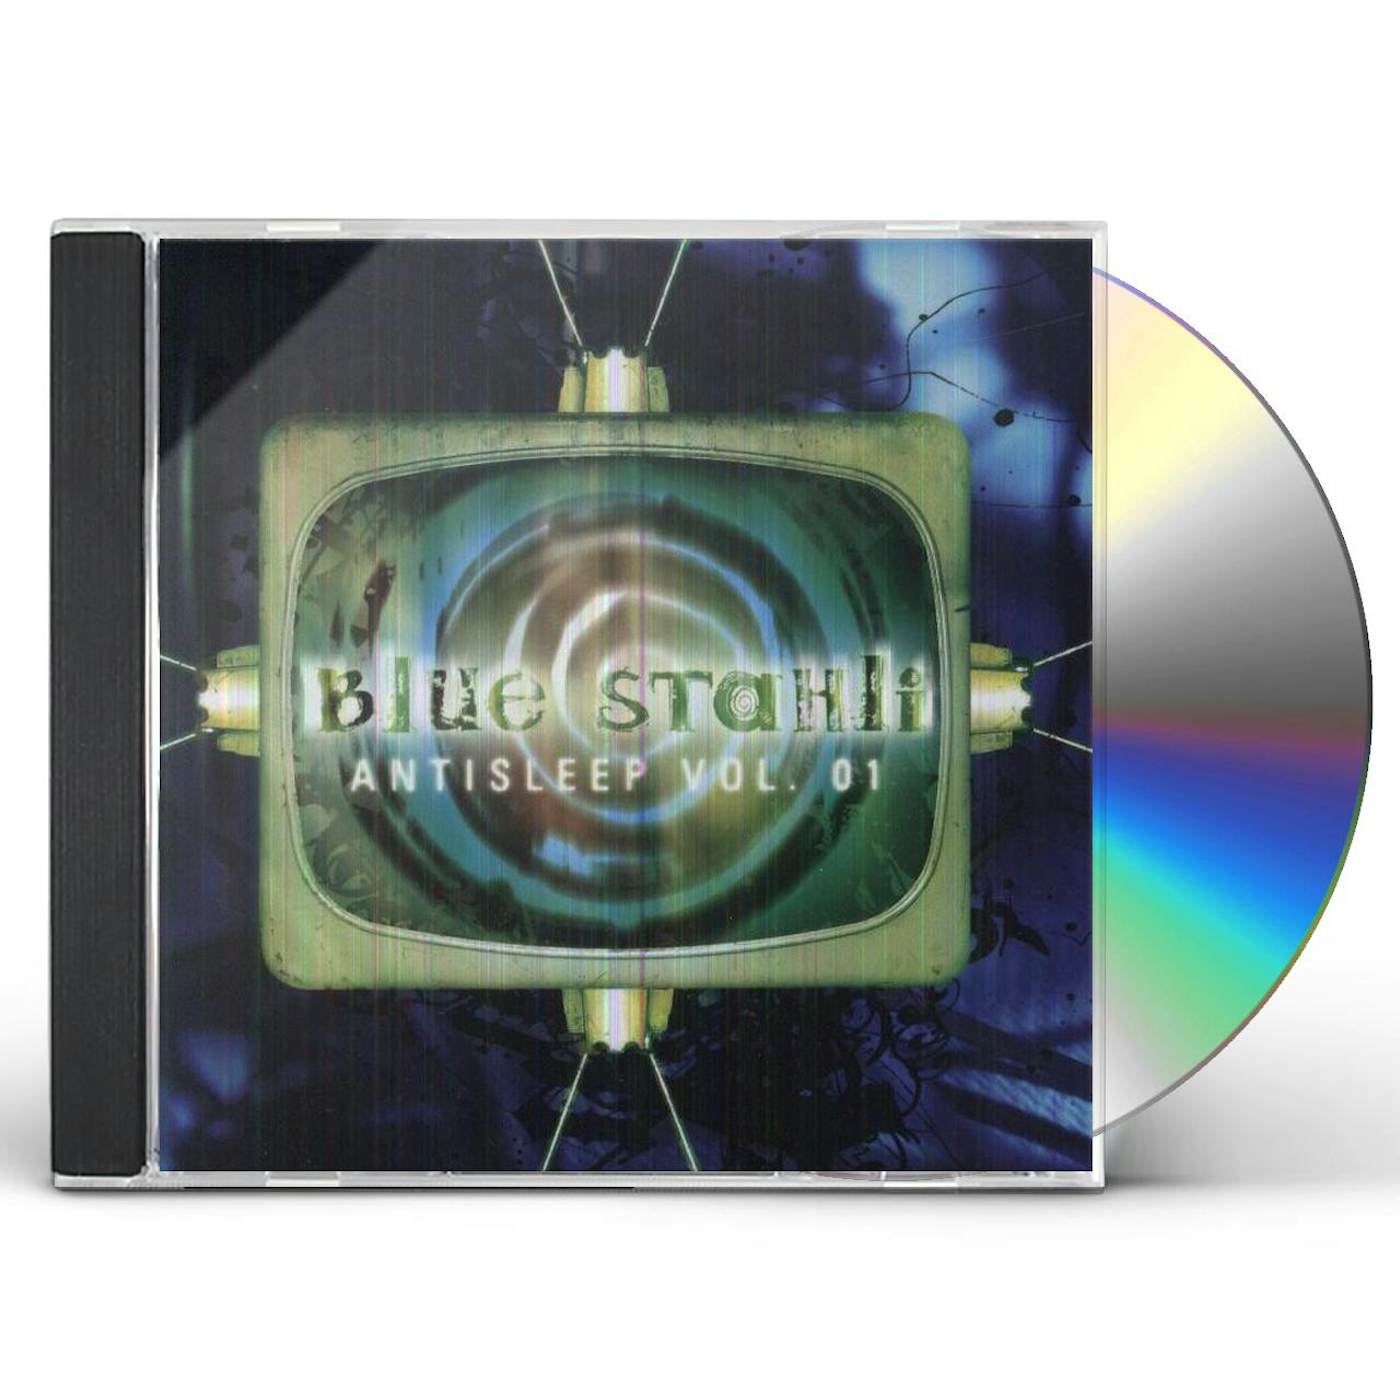 Blue Stahli ANTISLEEP 1 CD